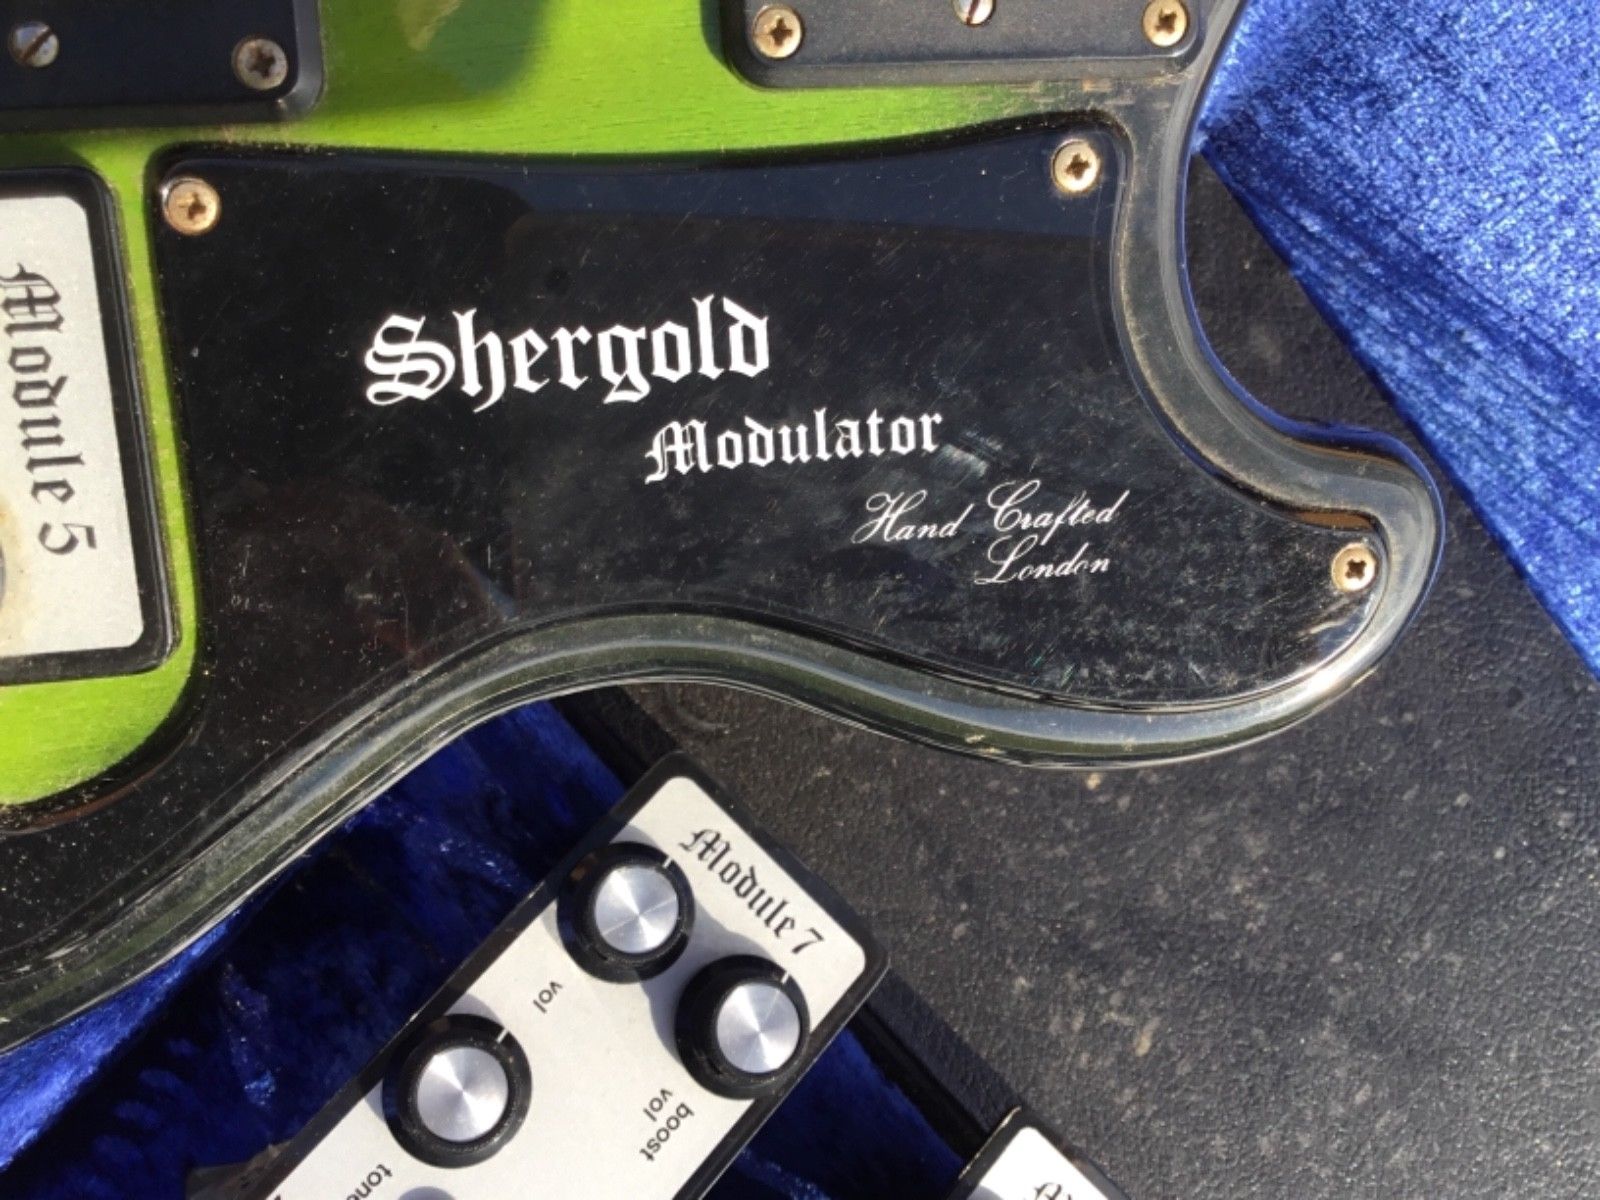 Shergold Modulator guitar